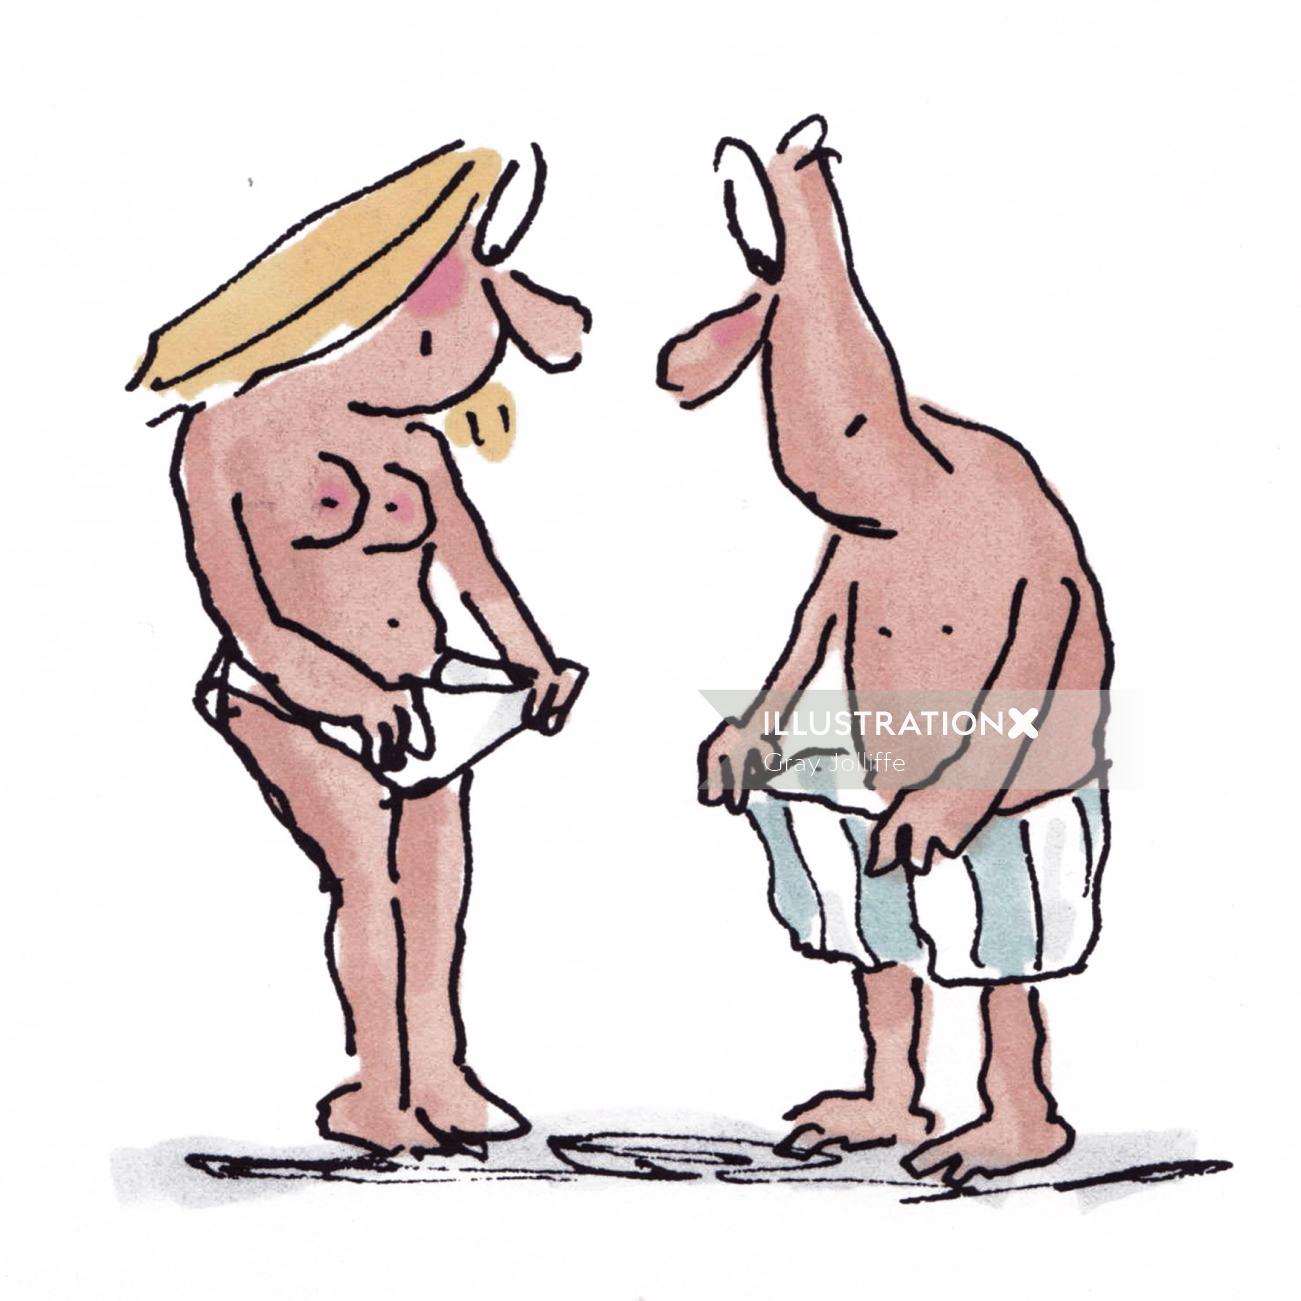 Couple looking undergarment - Cartoon illustration by Gray Jolliffe